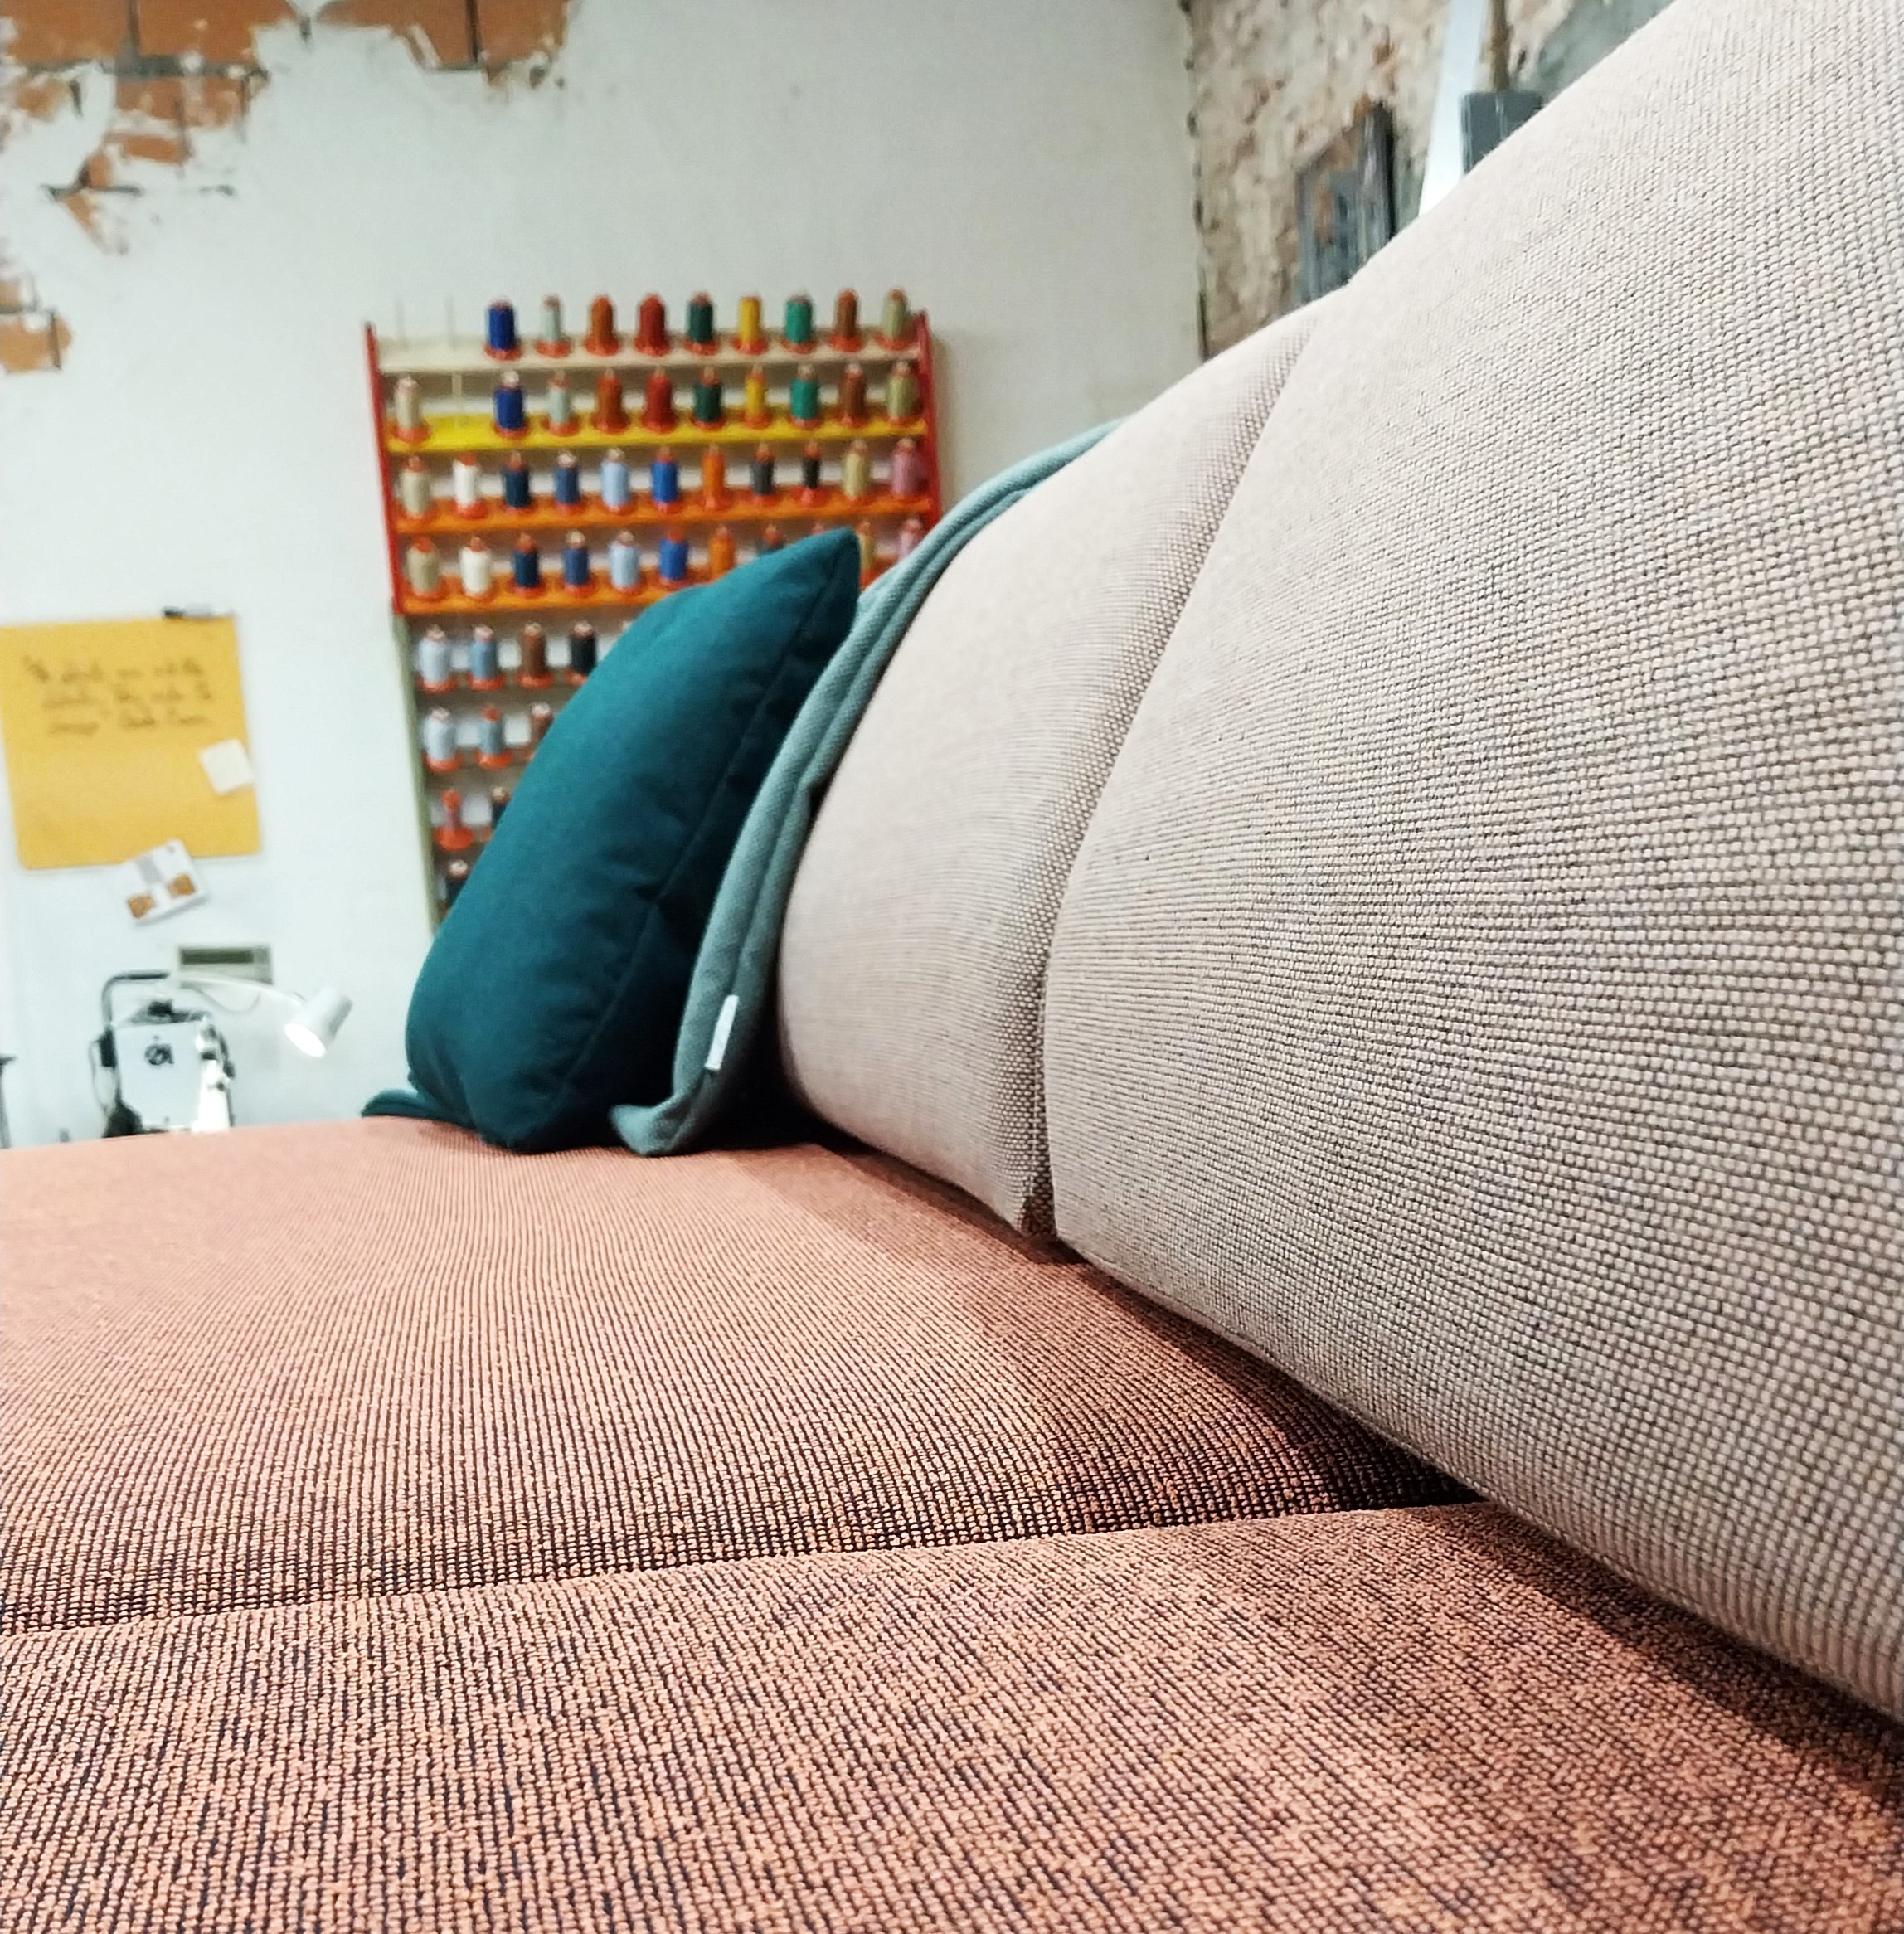 Sofa met rode kussens om te zitten en baige kleur voor de rug